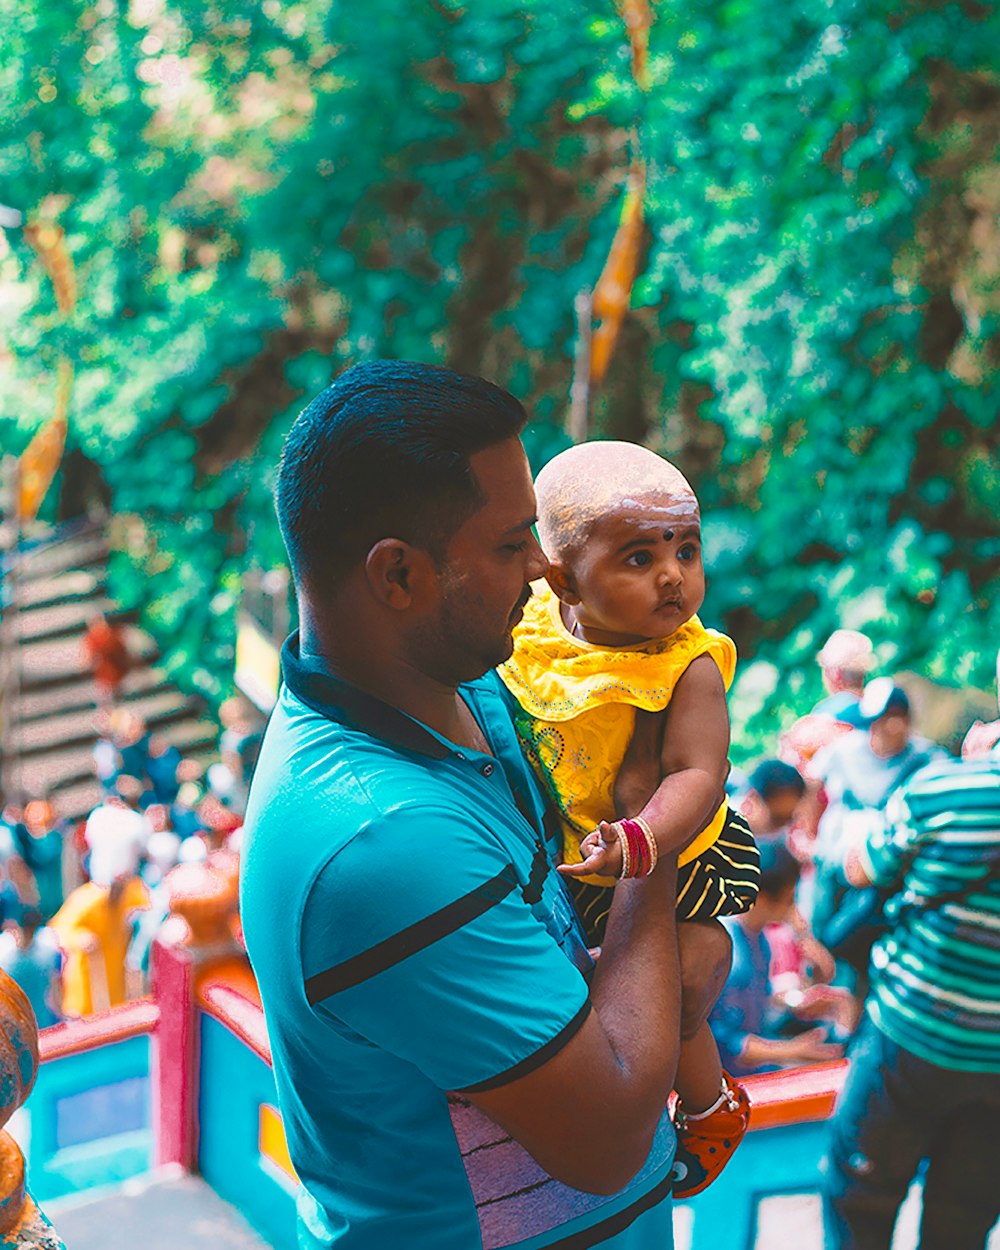 Mann im blauen Tanktop trägt Baby im gelben Hemd